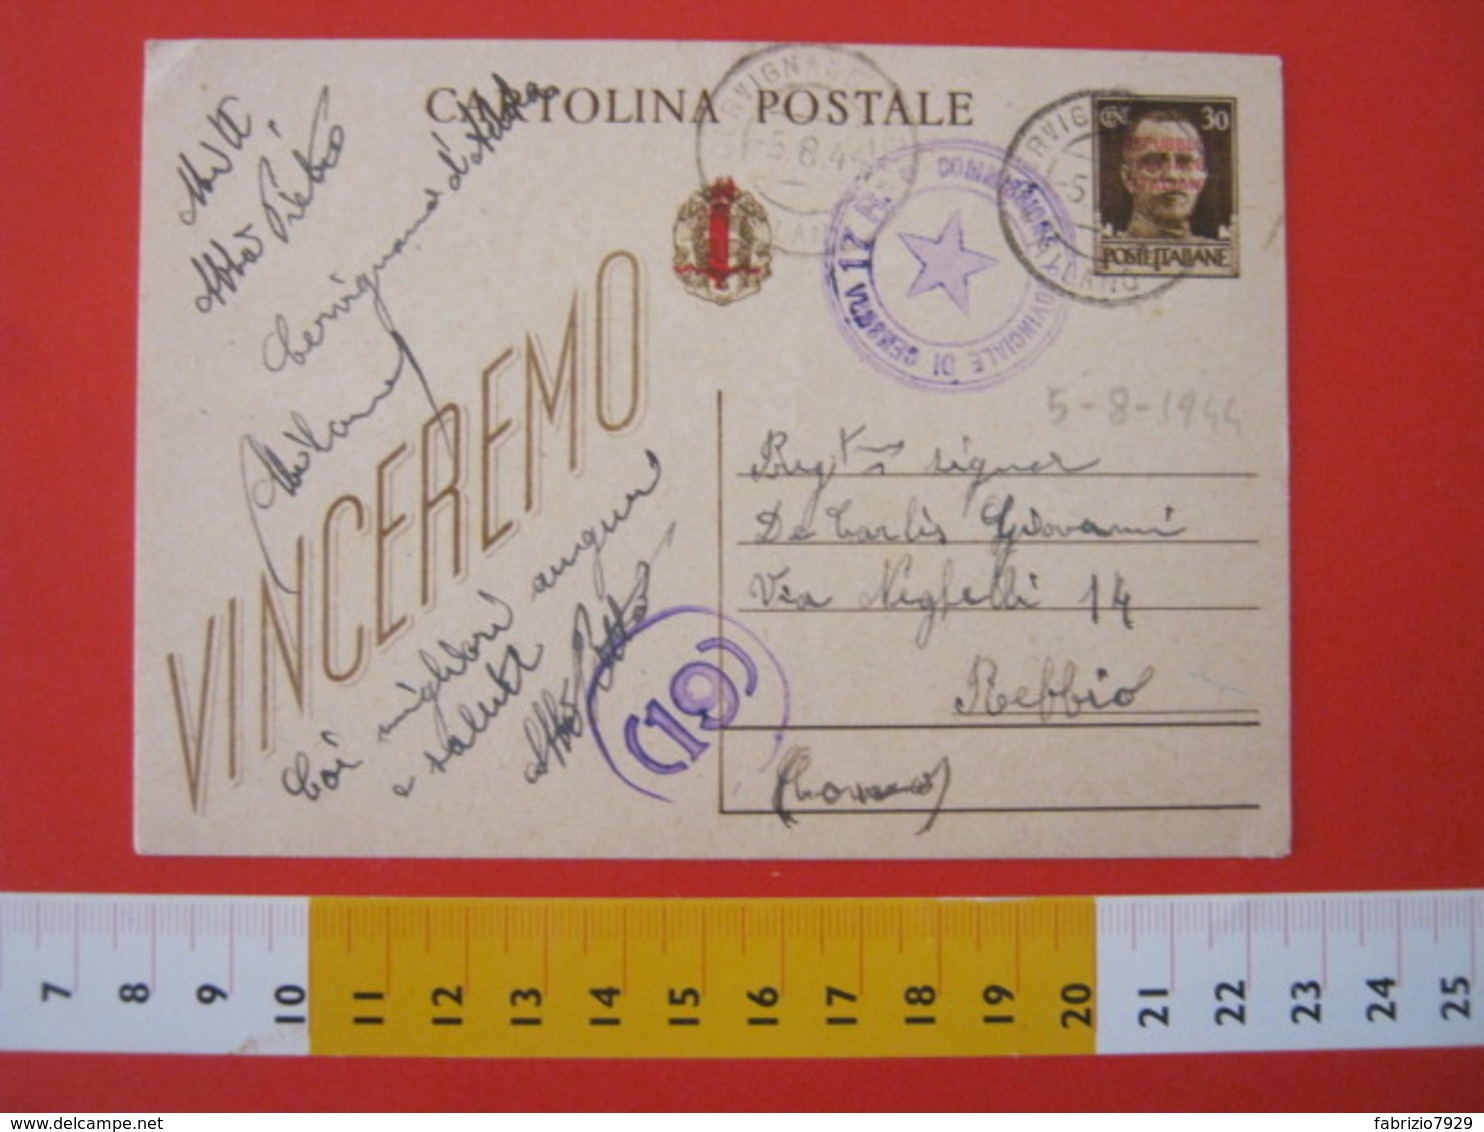 PC.3 ITALIA RSI CARTOLINA POSTALE - 1944 VINCEREMO SOVRASTAMPATA ROSSO FASCIO DA CERVIGNANO ADDA MILANO LODI 5/8 CENSURA - Interi Postali